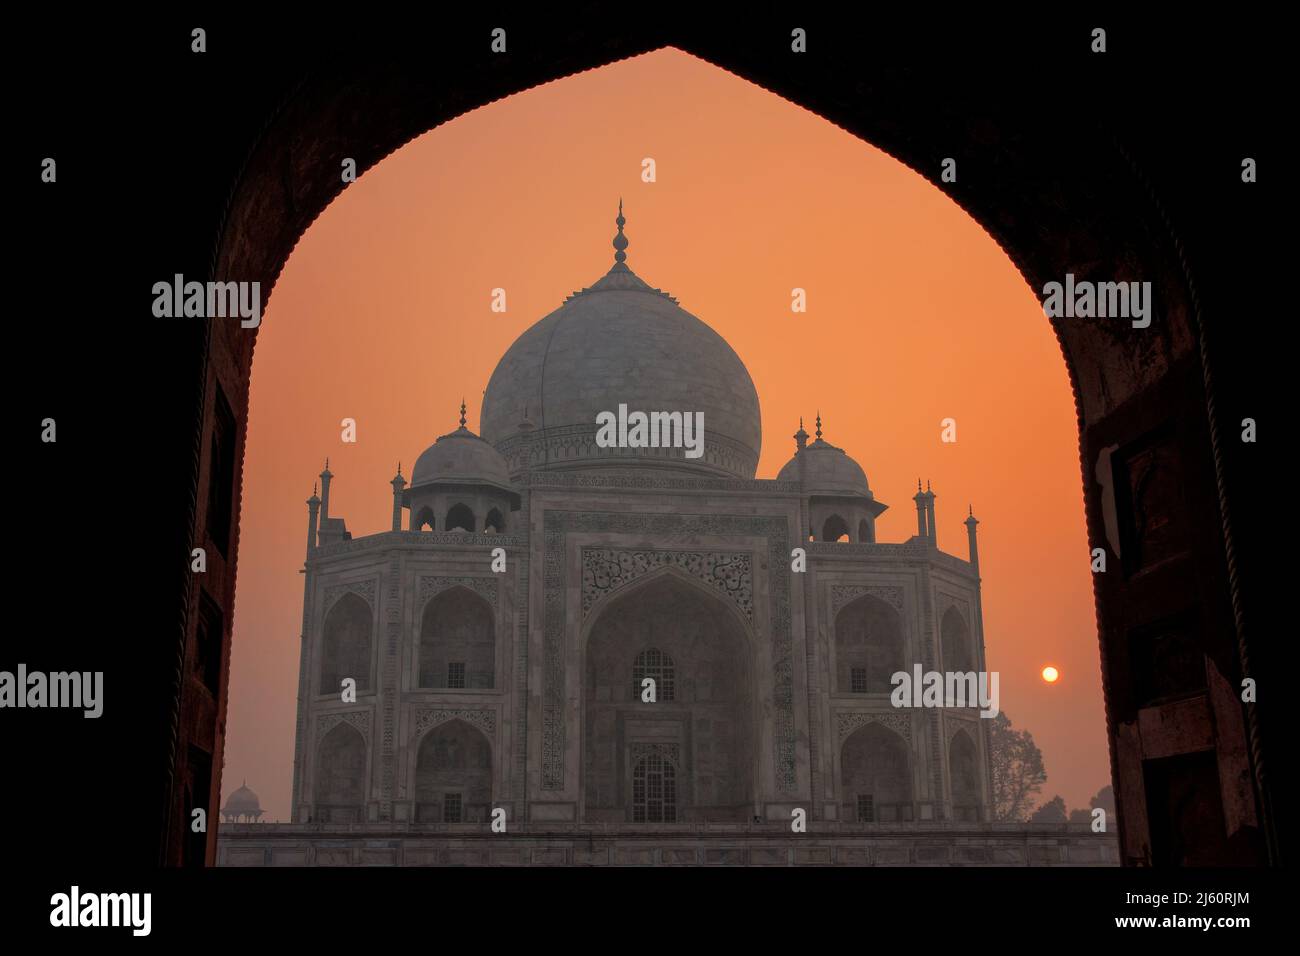 Taj Mahal di sunrise incorniciato con l arco della moschea, Agra, Uttar Pradesh, India. Taj Mahal è stato designato come un Sito Patrimonio Mondiale dell'UNESCO nel 1983. Foto Stock